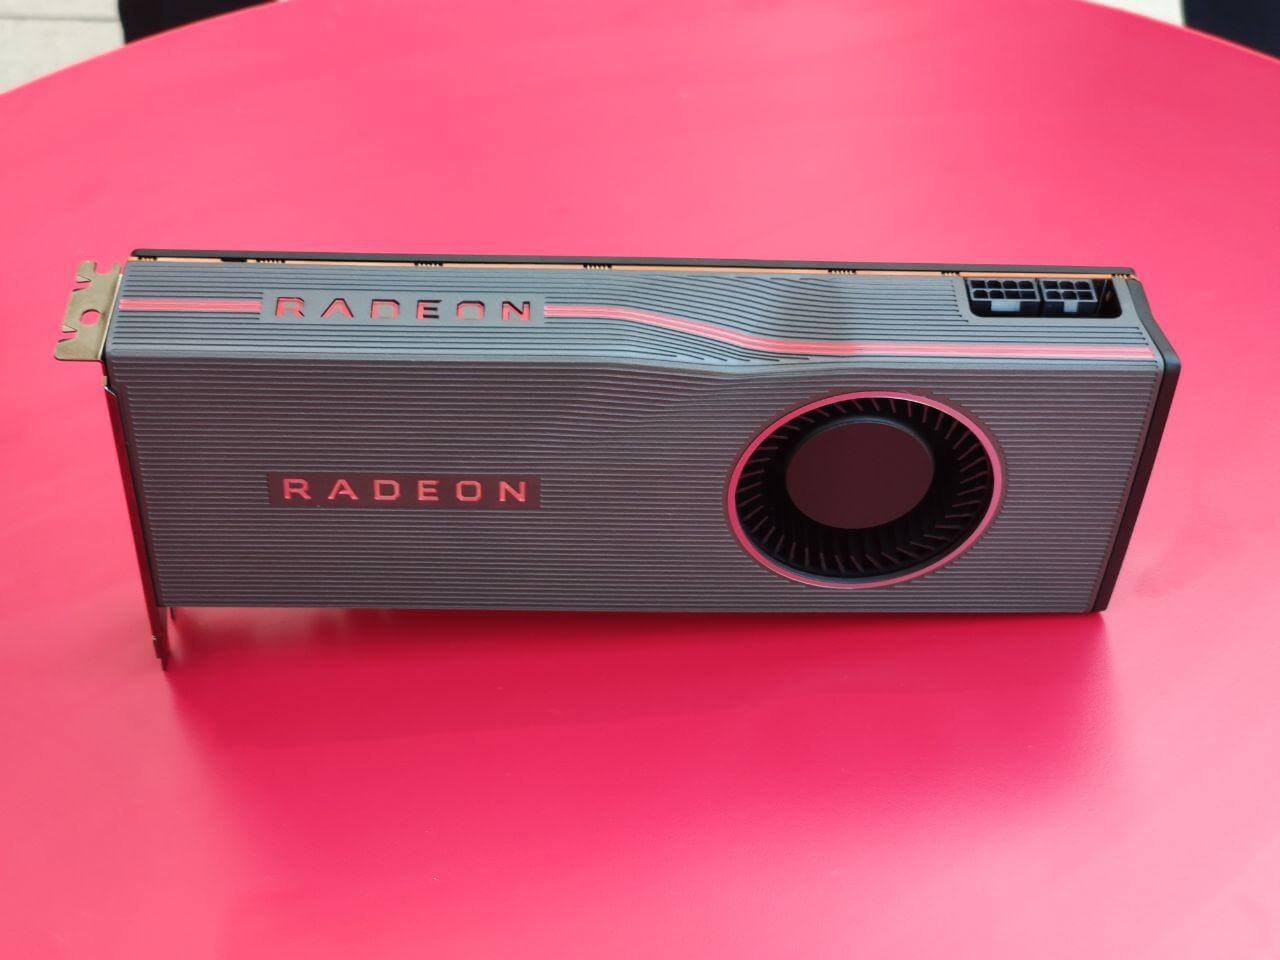 Видеокарты AMD Radeon RX 5700 XT и RX 5700 представлены официально